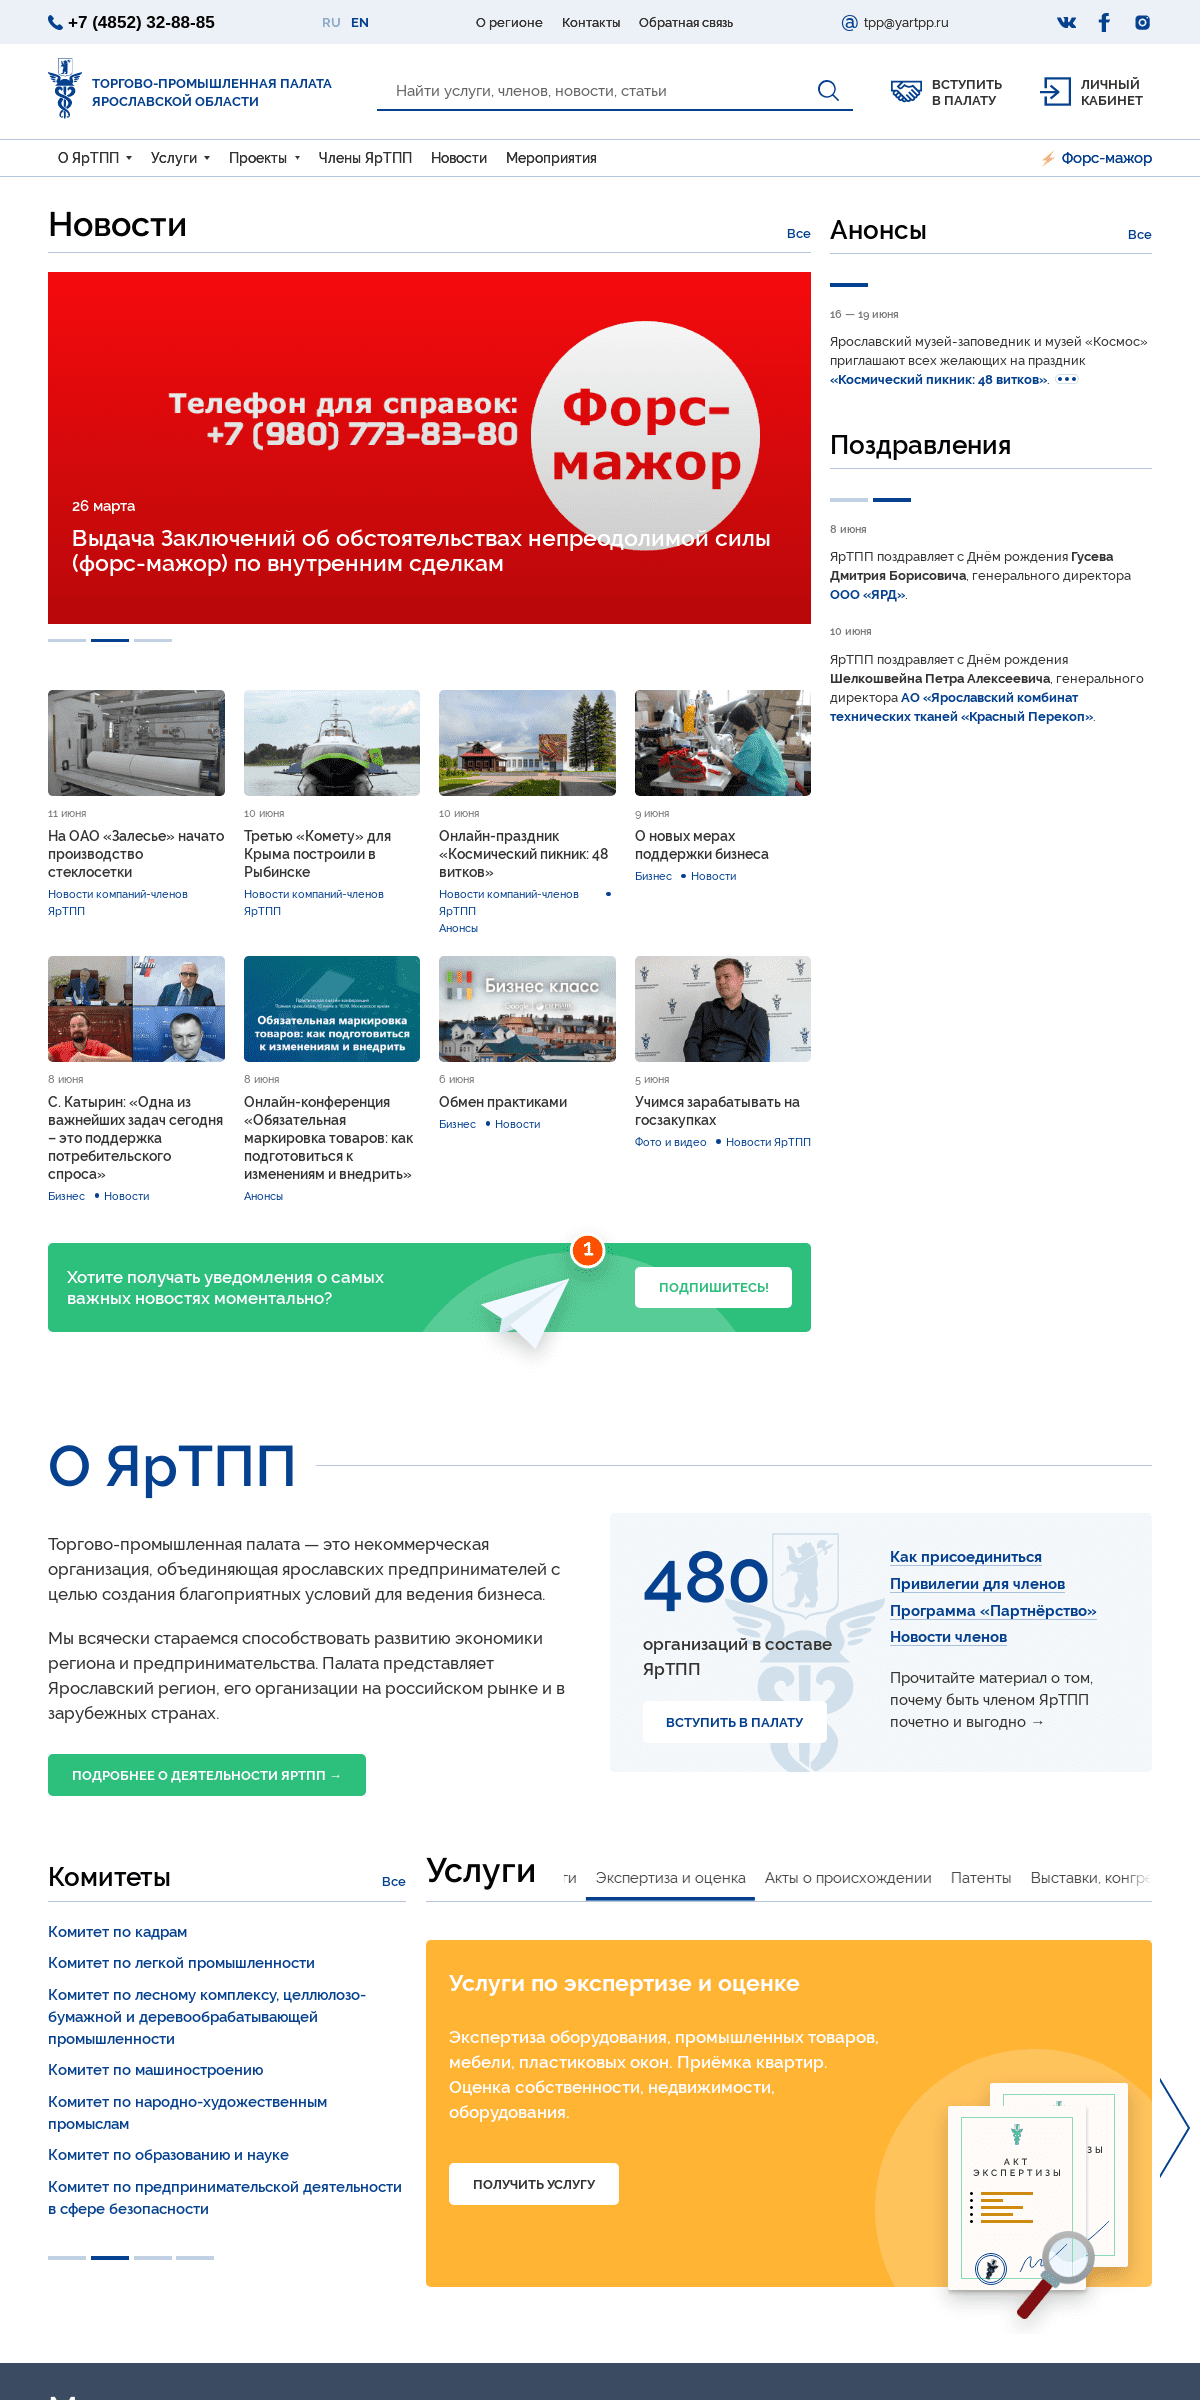 A complete backup of yartpp.ru